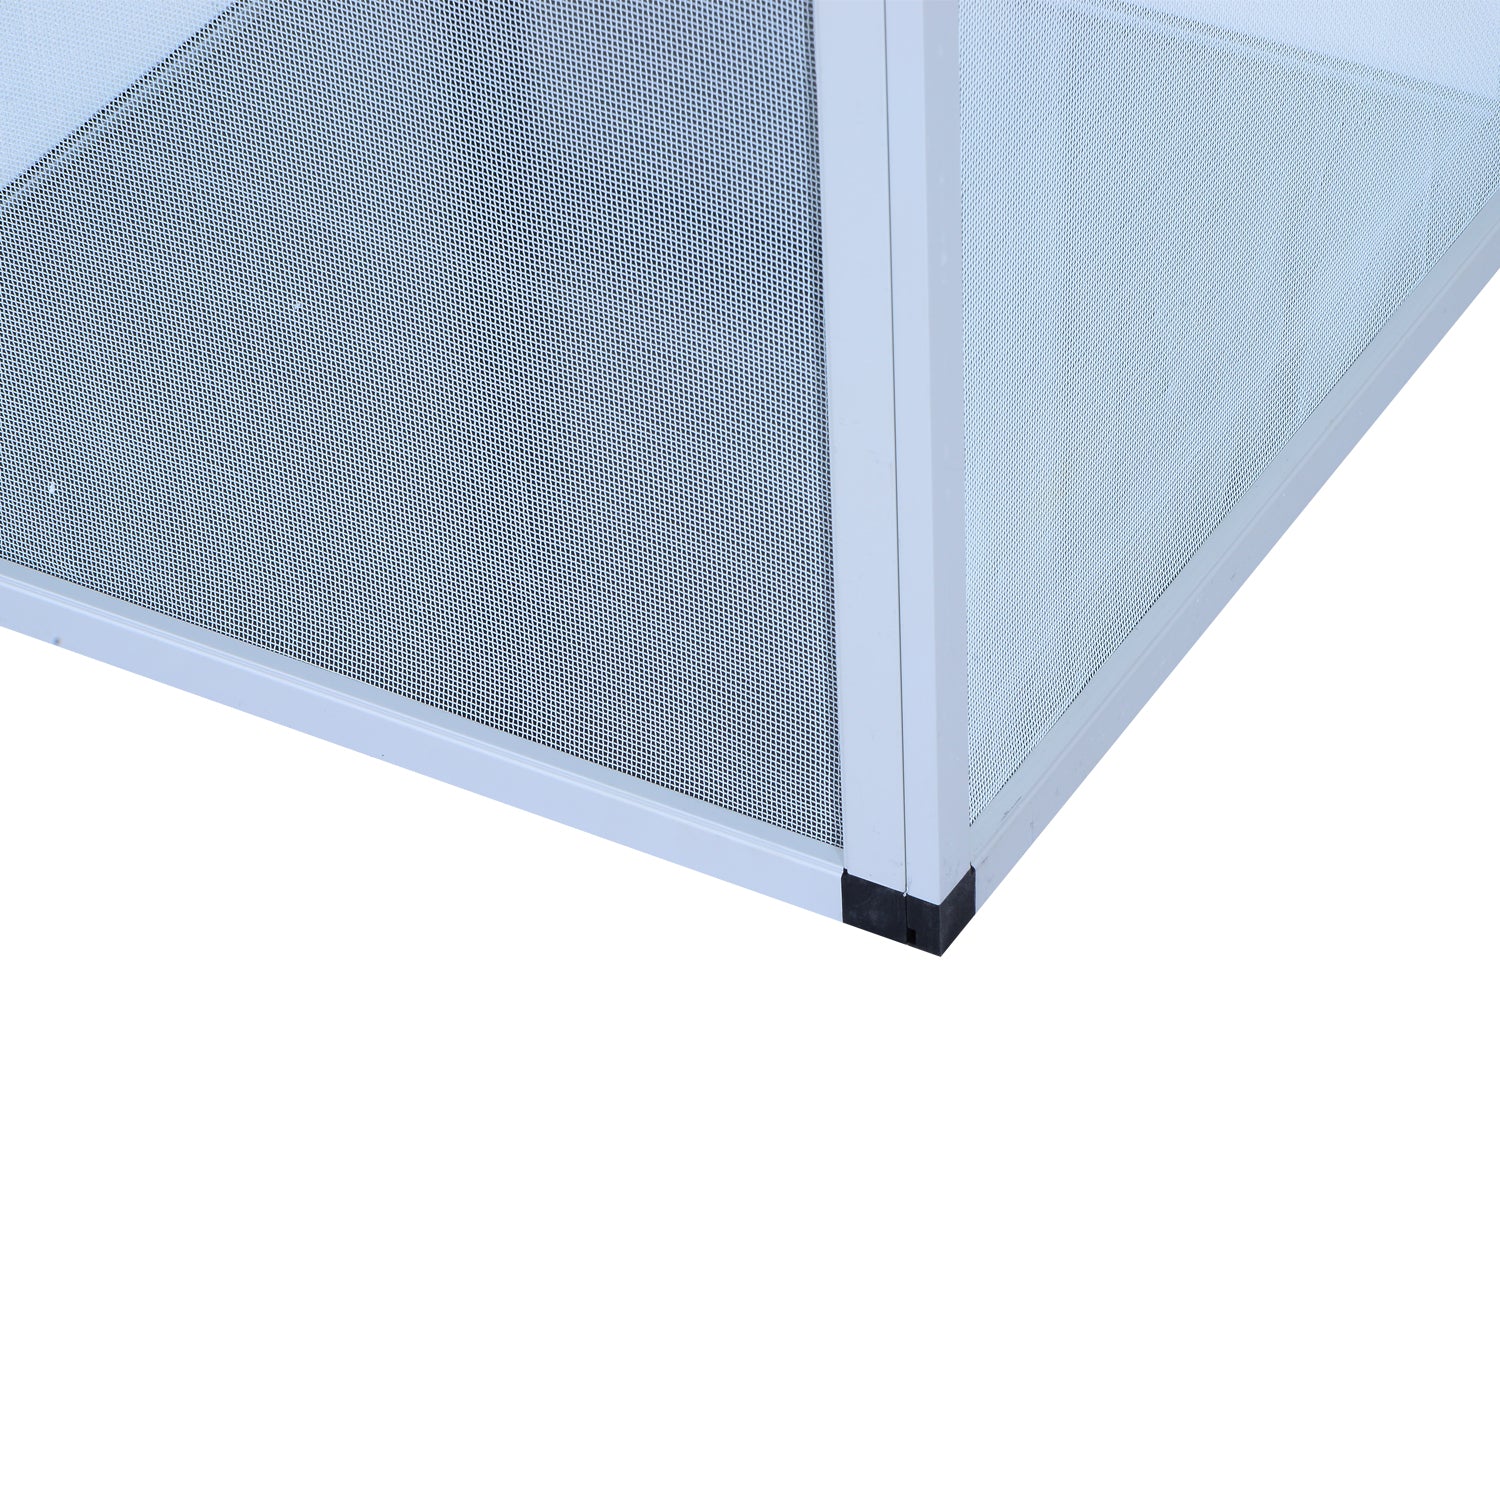 Aluminium Fresh Air Screen Vivarium, Waterproof, 45Lx45Wx80H cm